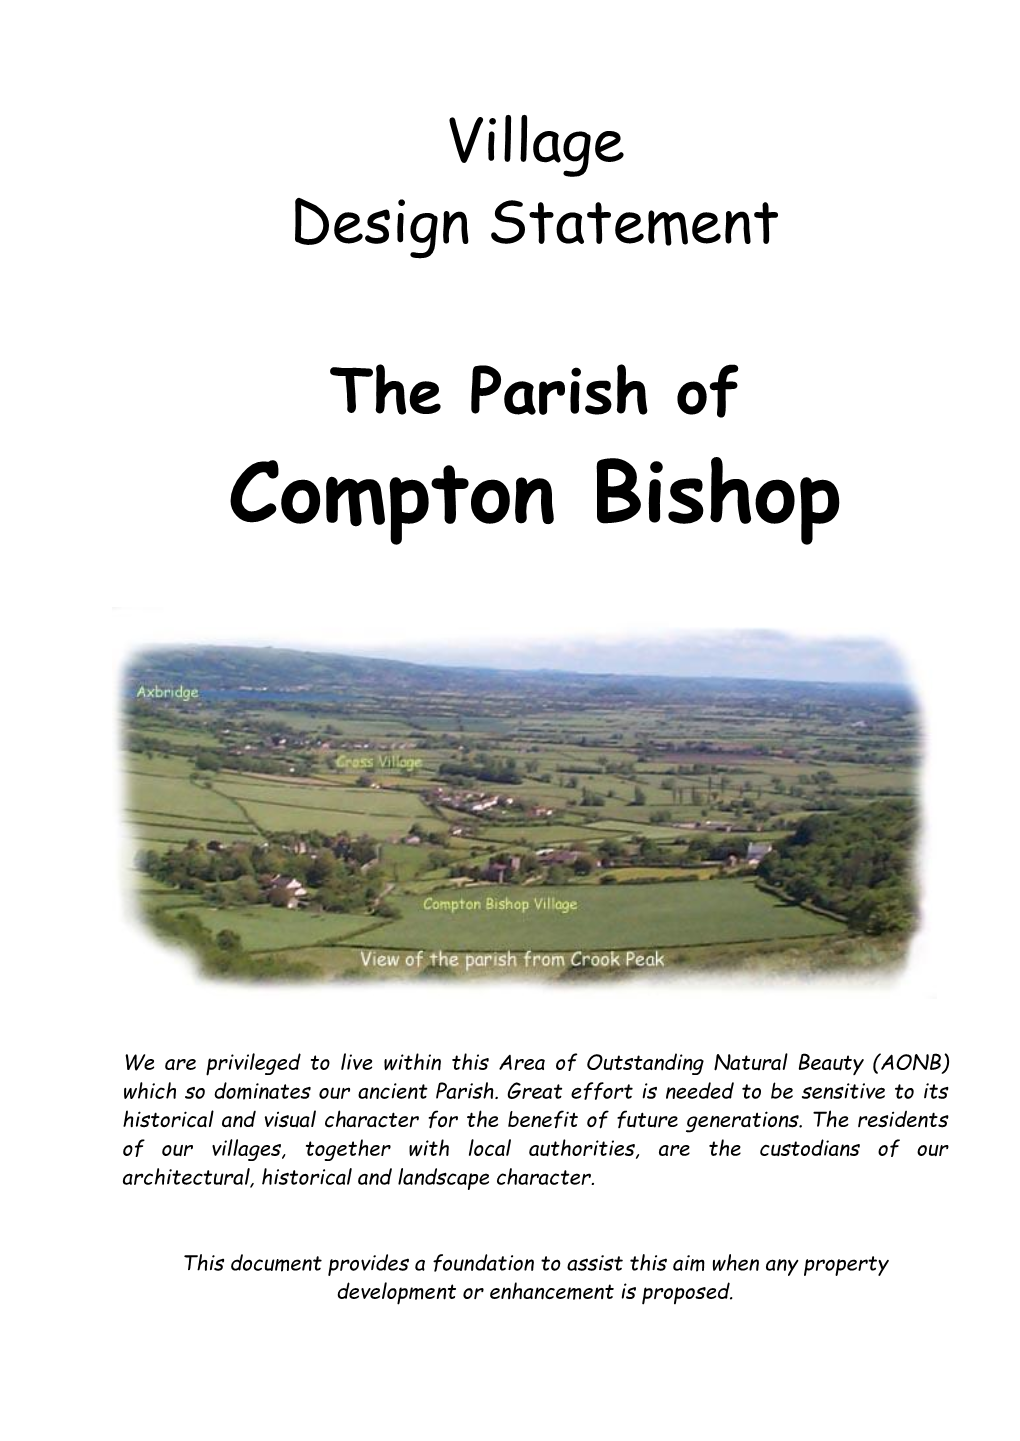 Compton Bishop Village Design Statement